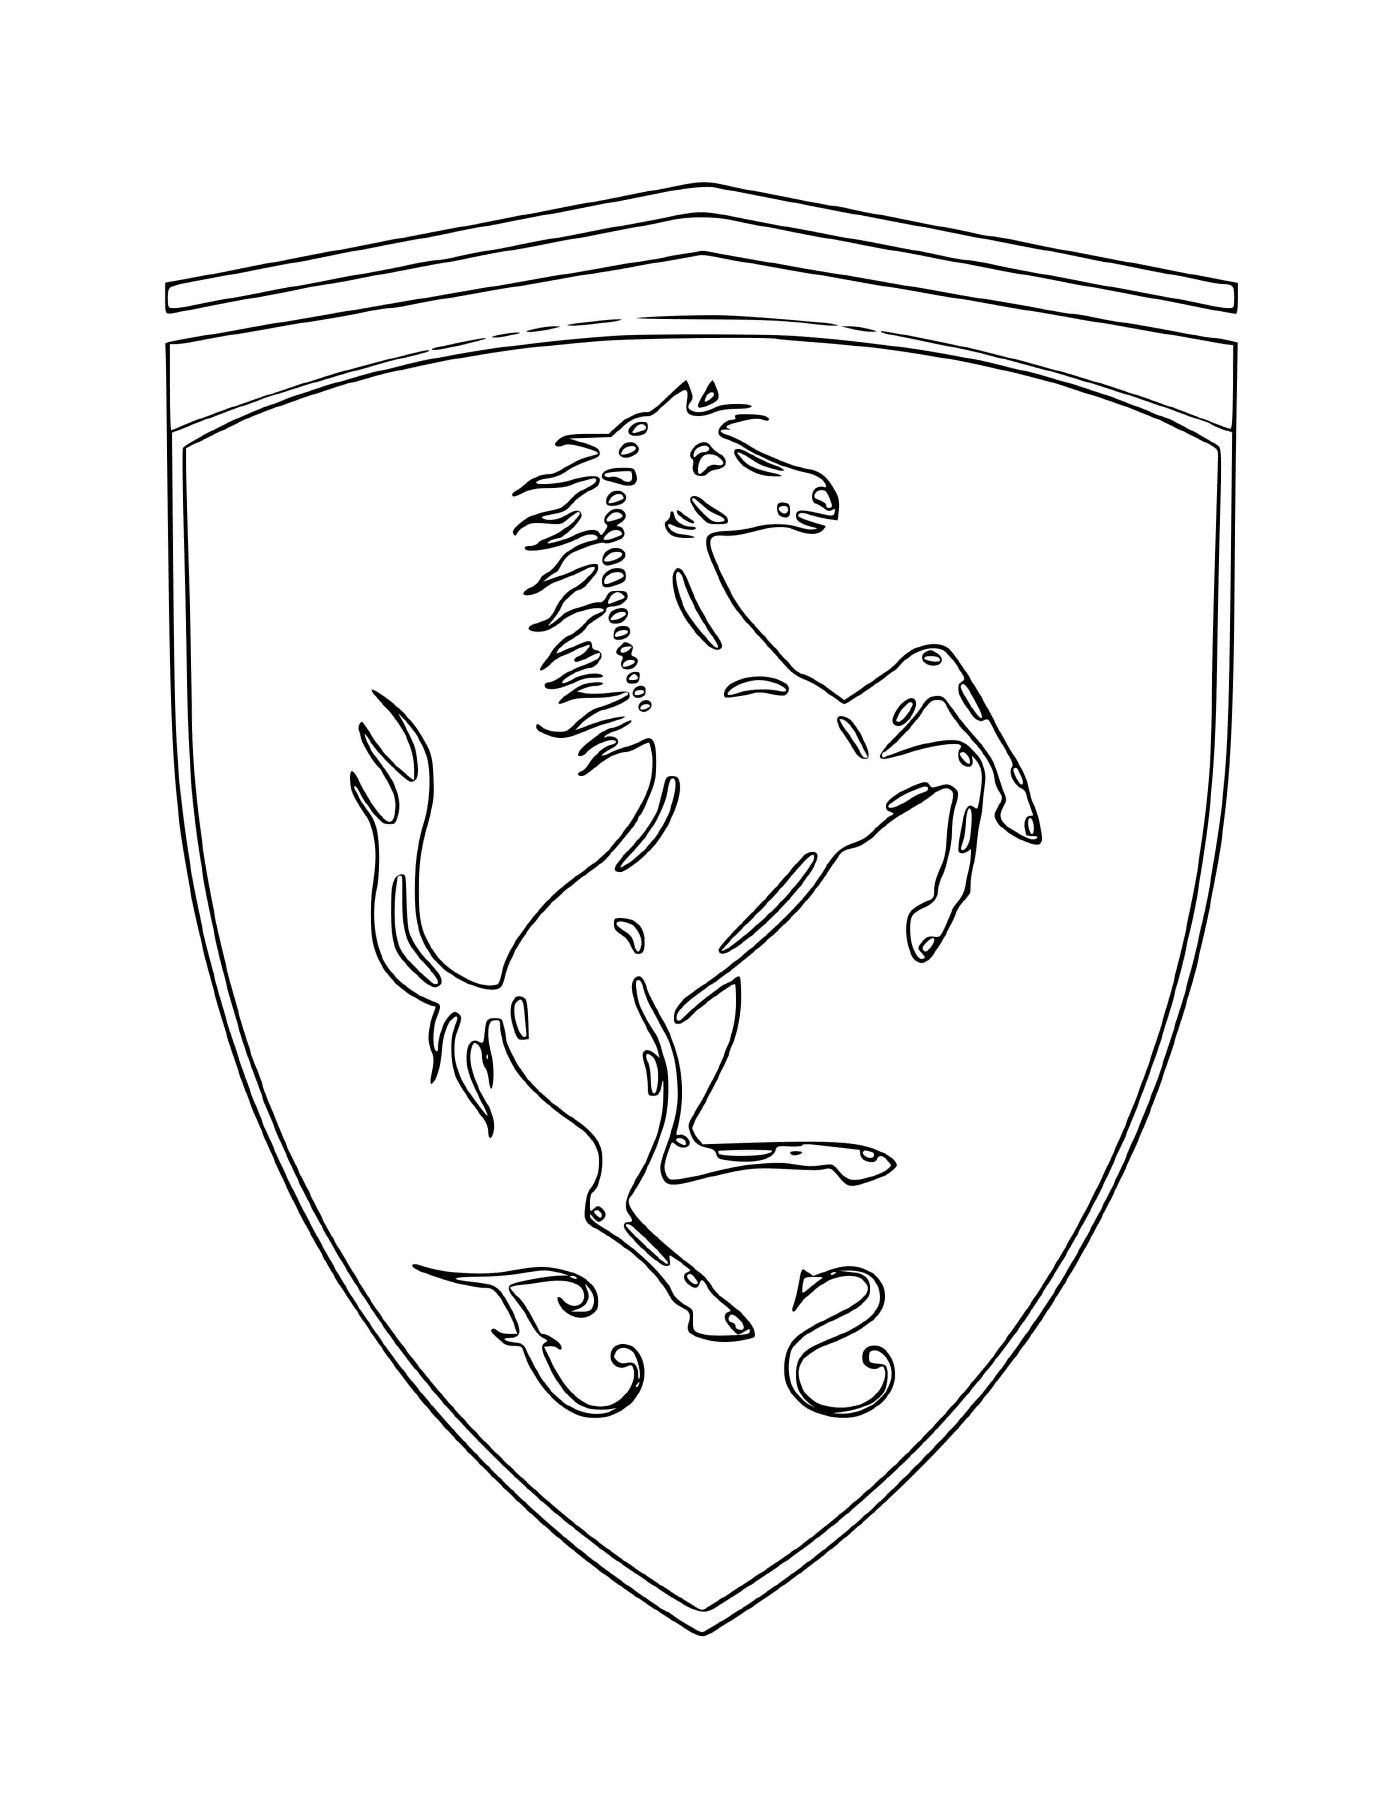   Le logo de la voiture Ferrari avec un cheval 